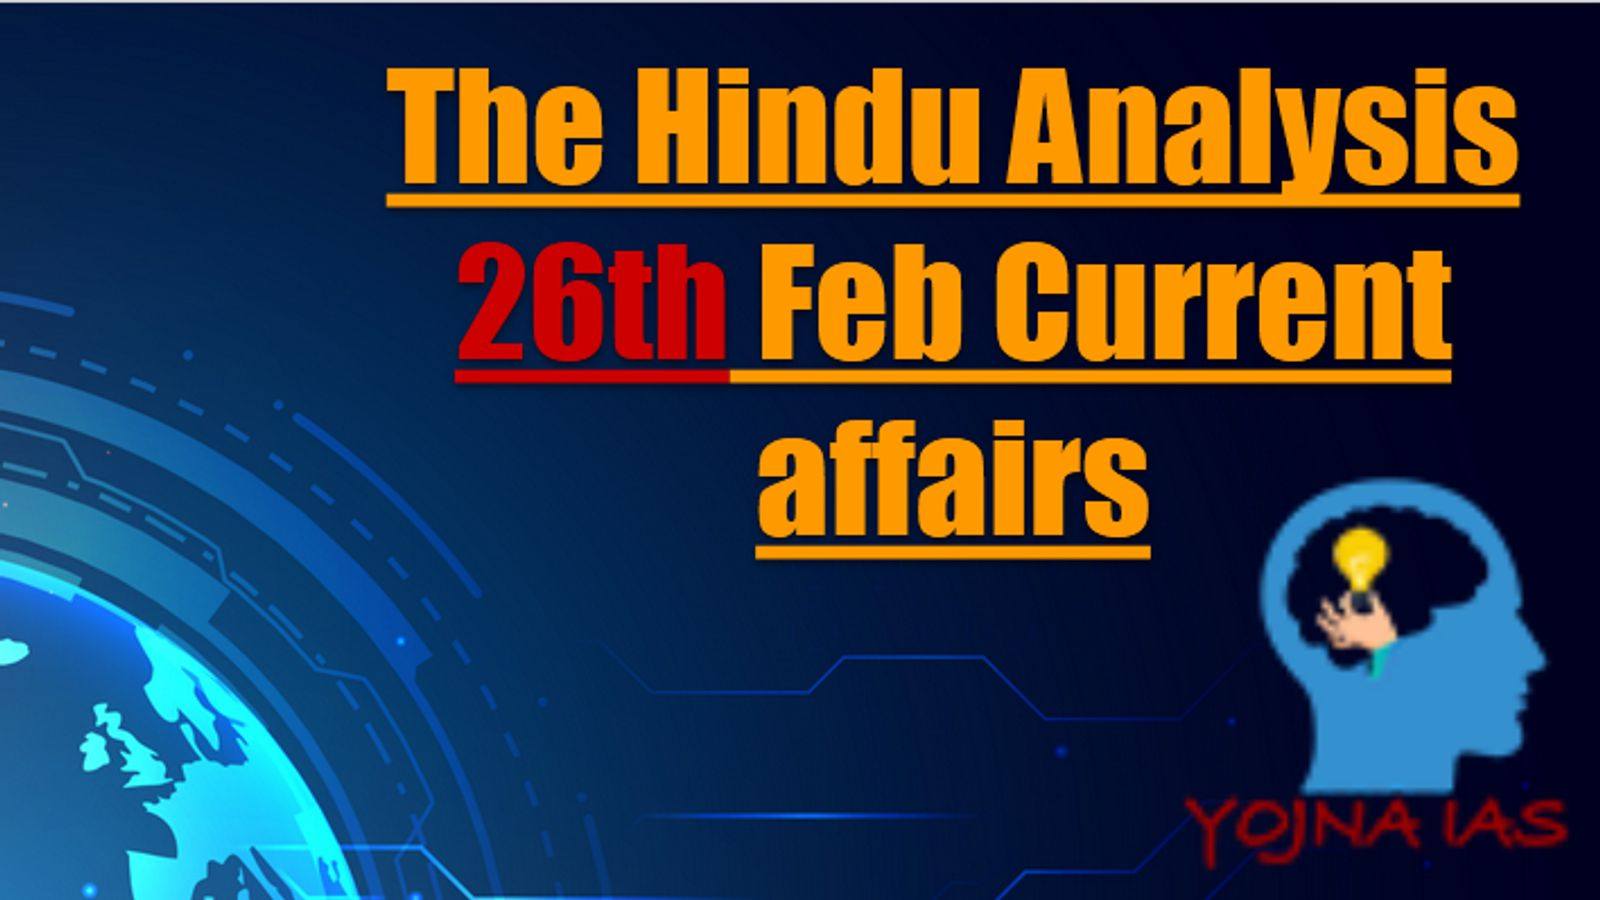 The Hindu Analysis 26 February